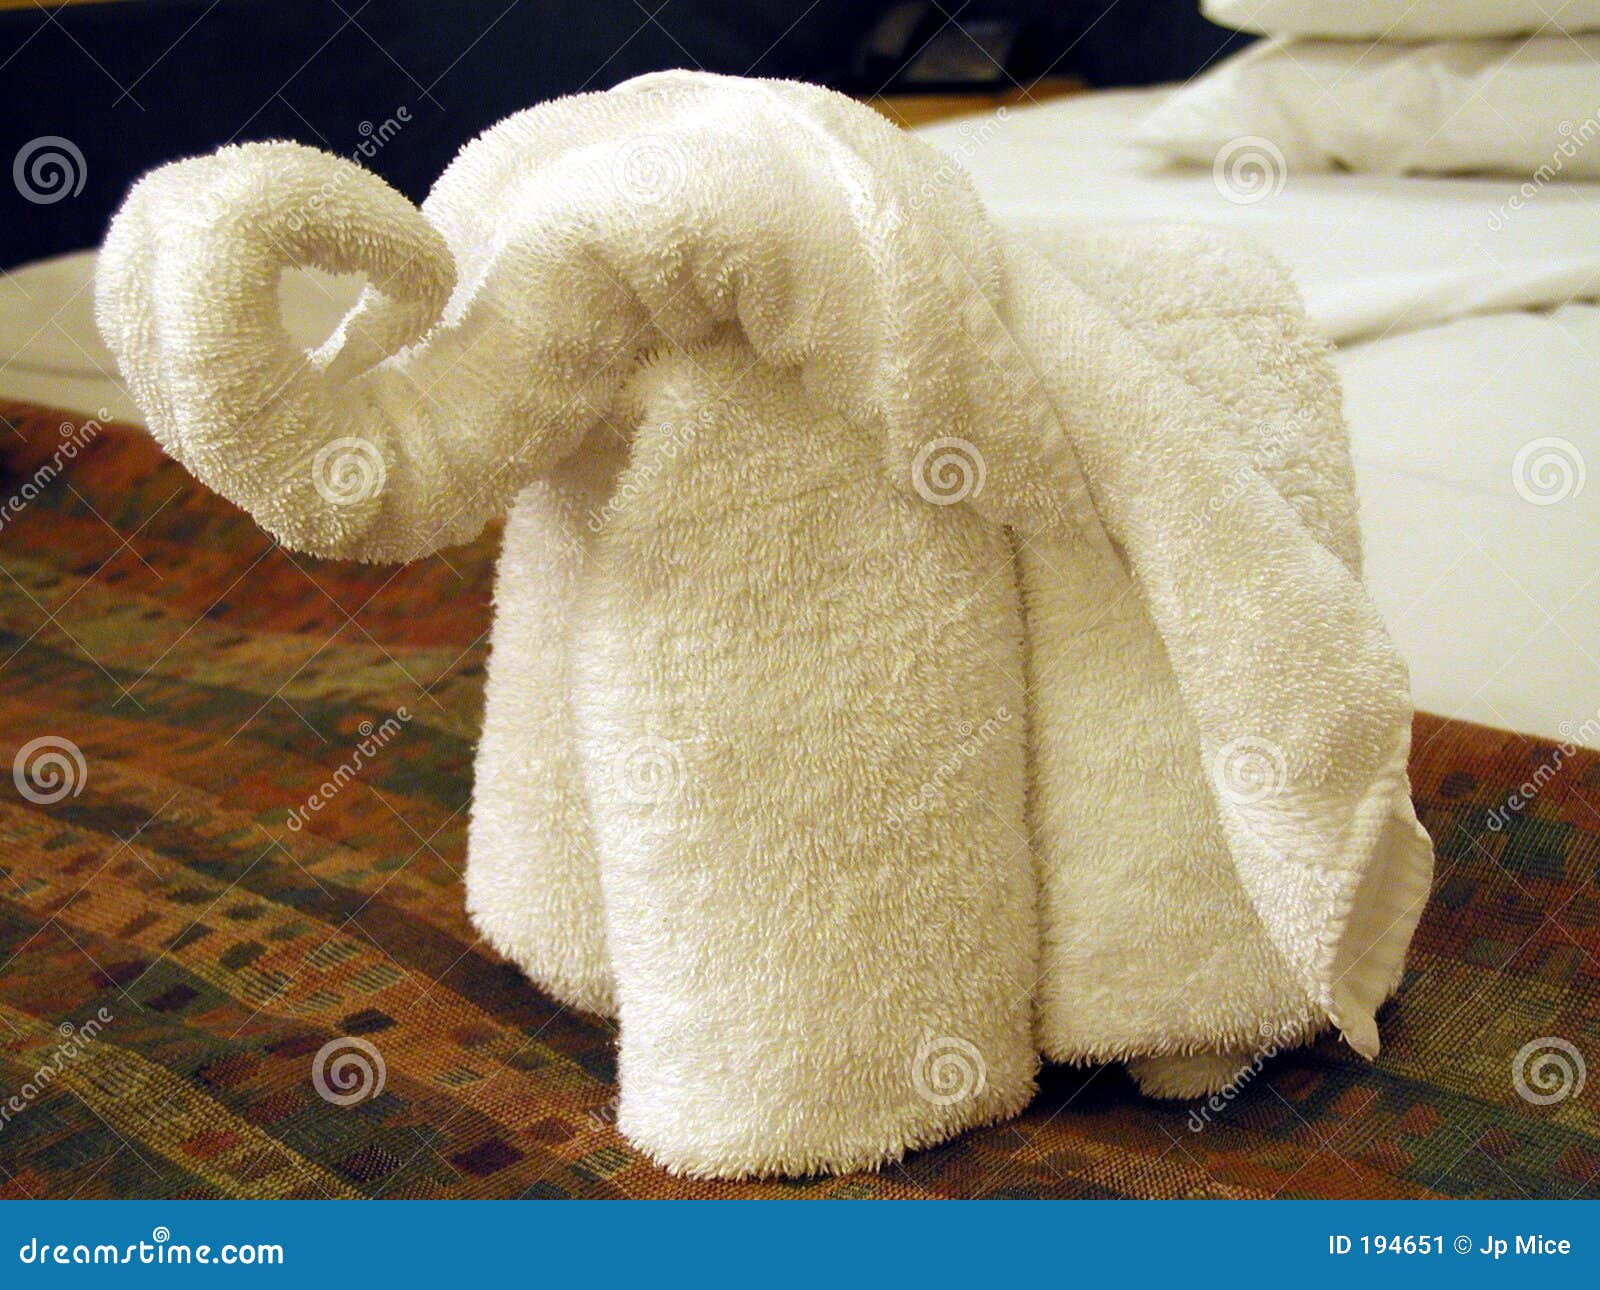 Elefante. Plegamiento de la toalla.